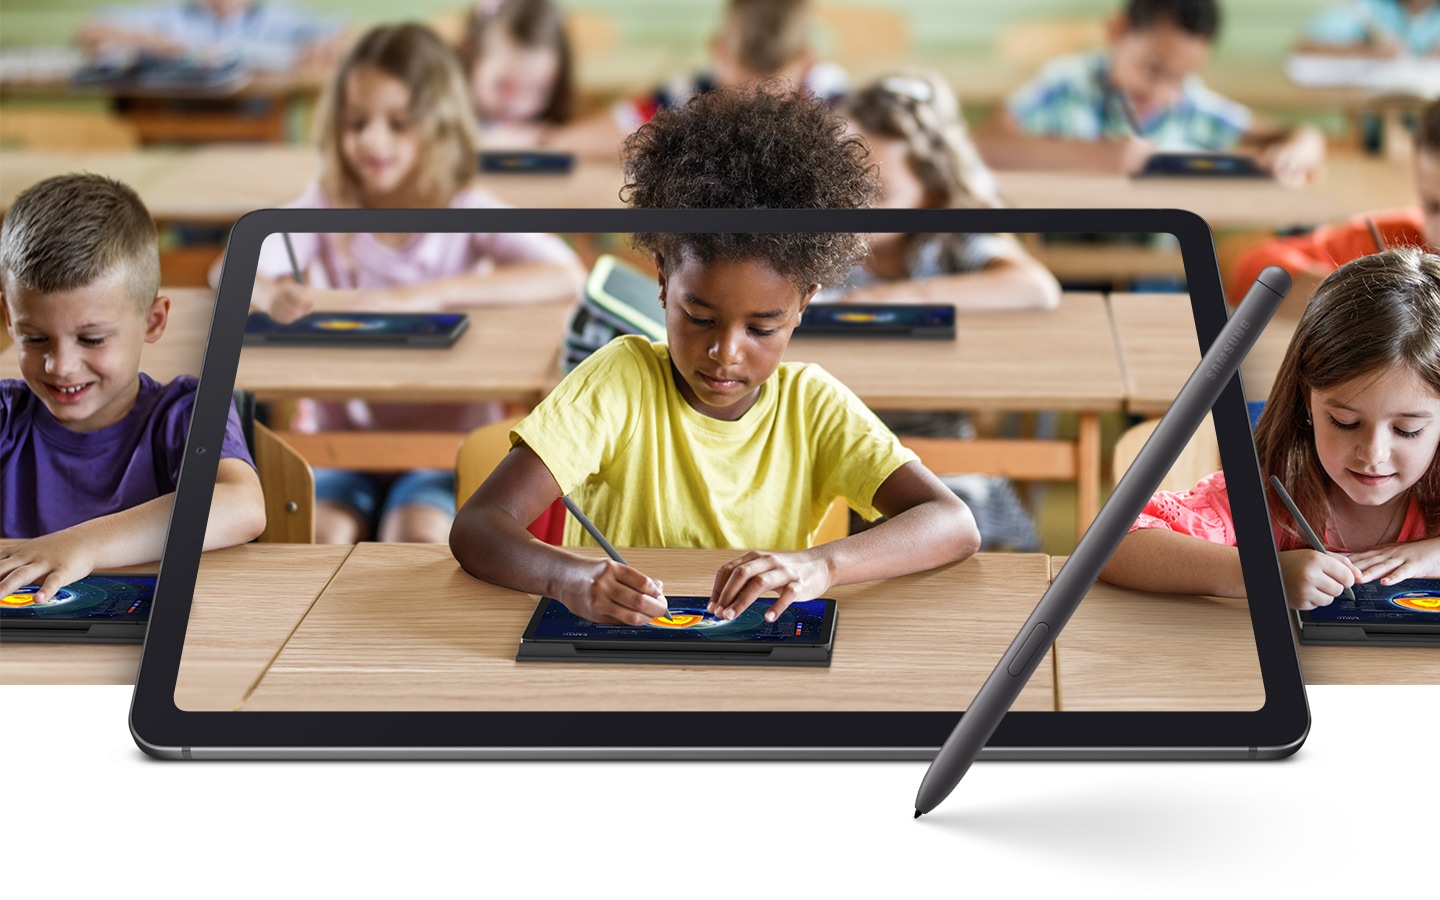 Sprawdź nowy Galaxy Tab S6 Lite Wifi - idealny tablet dla Twojego dziecka